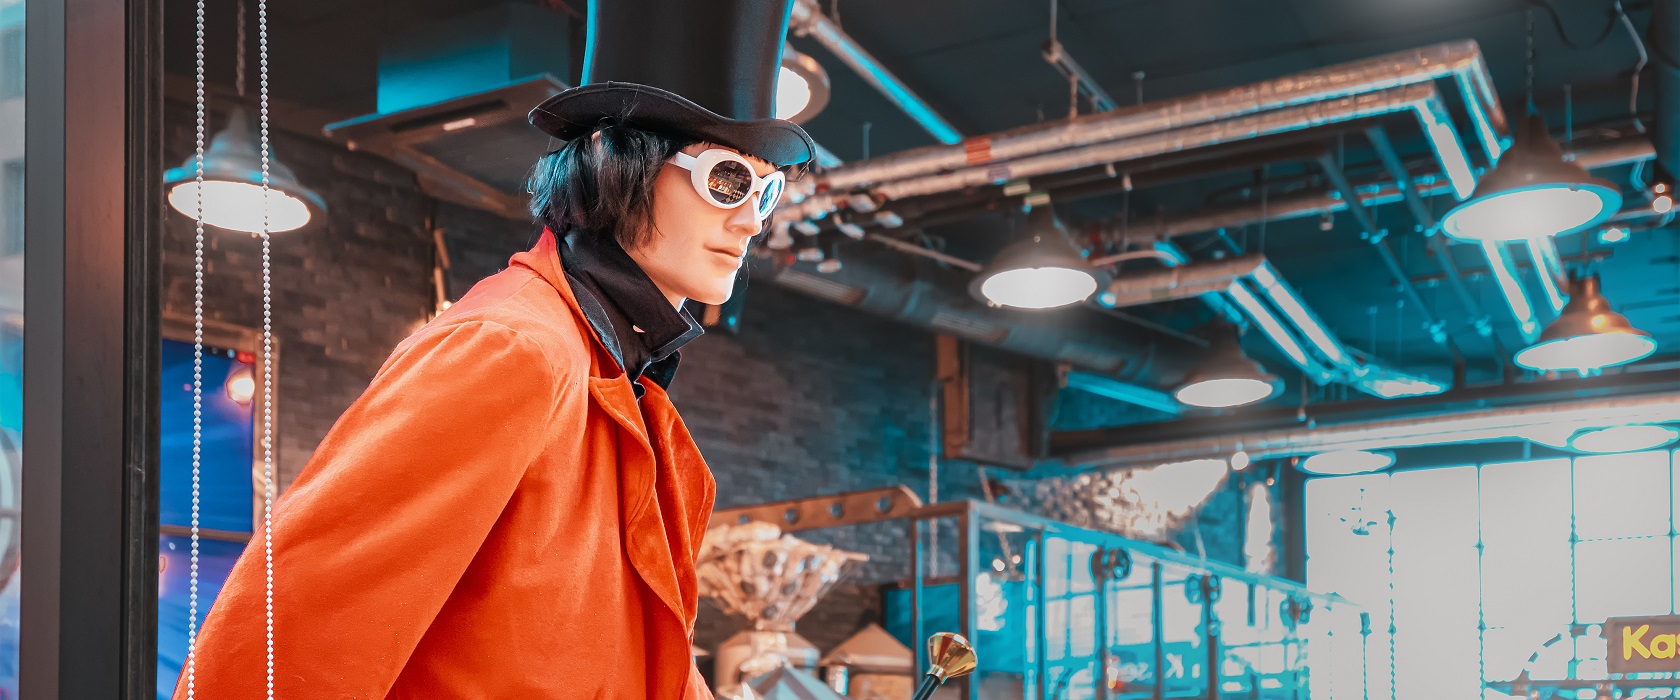 ein als Willy Wonka verkleidetes Mannequin in einer Schokoladenfabrik: es trägt einen Zylinder, einen roten Mantel sowie eine futuristische Sonnenbrille und hat schulterlange, schwarze Haare